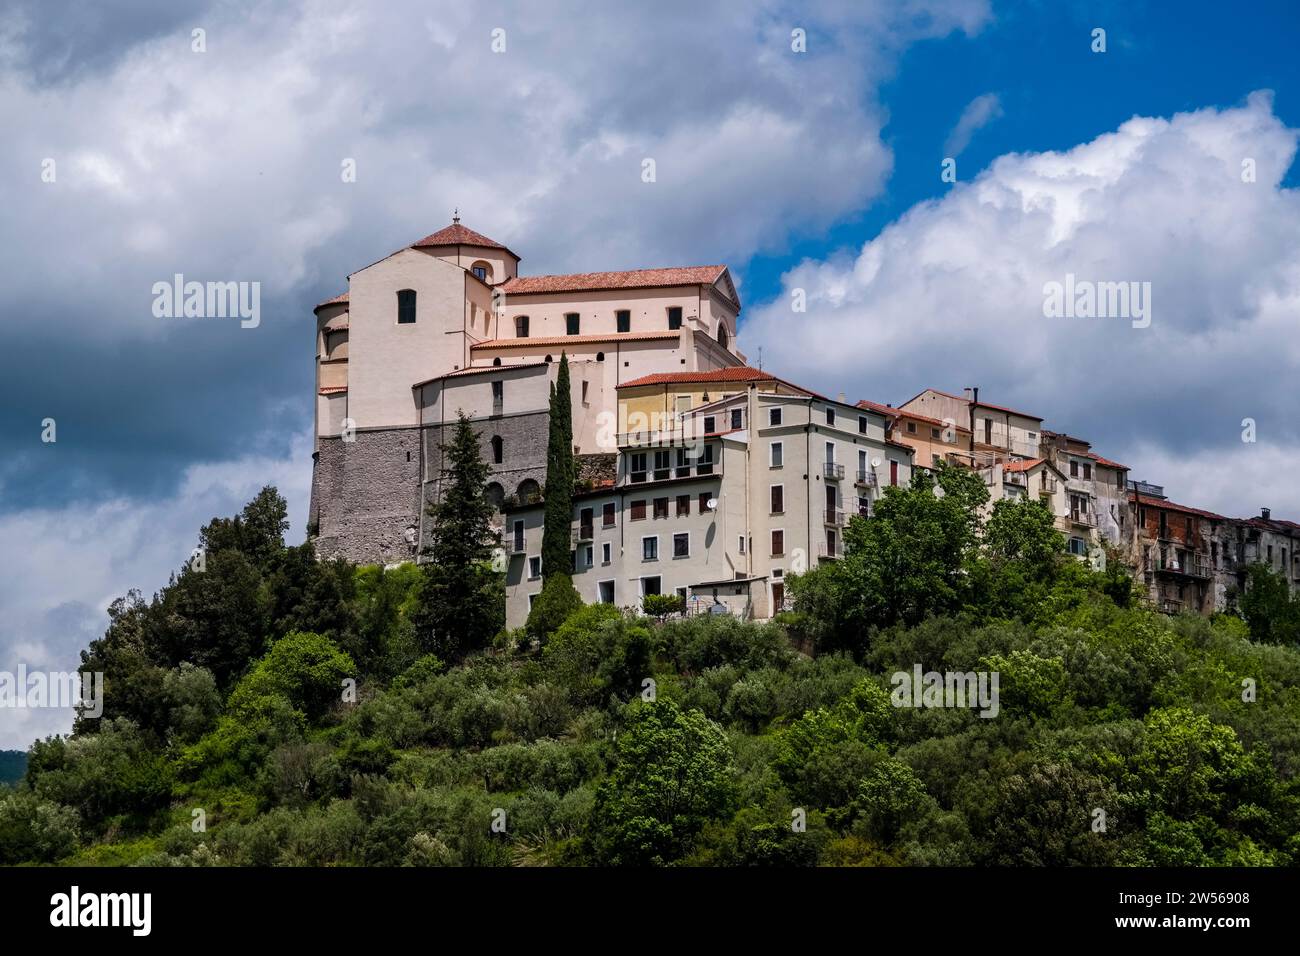 Die kleine Stadt Rivello mit der Kirche Santa Maria del Poggio liegt malerisch auf dem Gipfel einer bewaldeten Hügellandschaft. Stockfoto